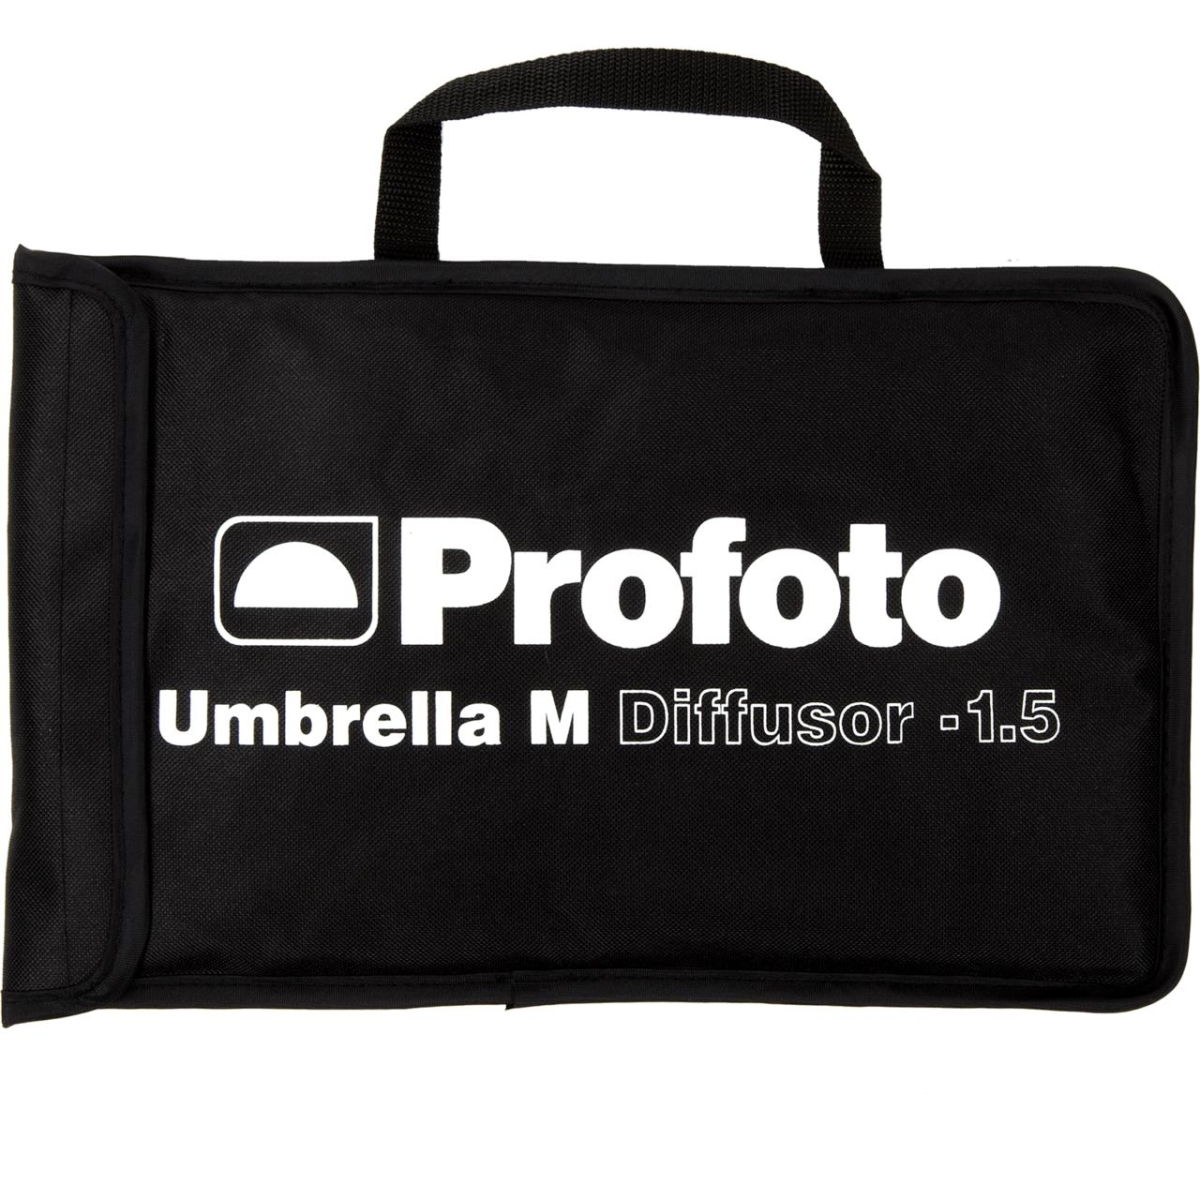 Profoto Umbrella M Diffuser